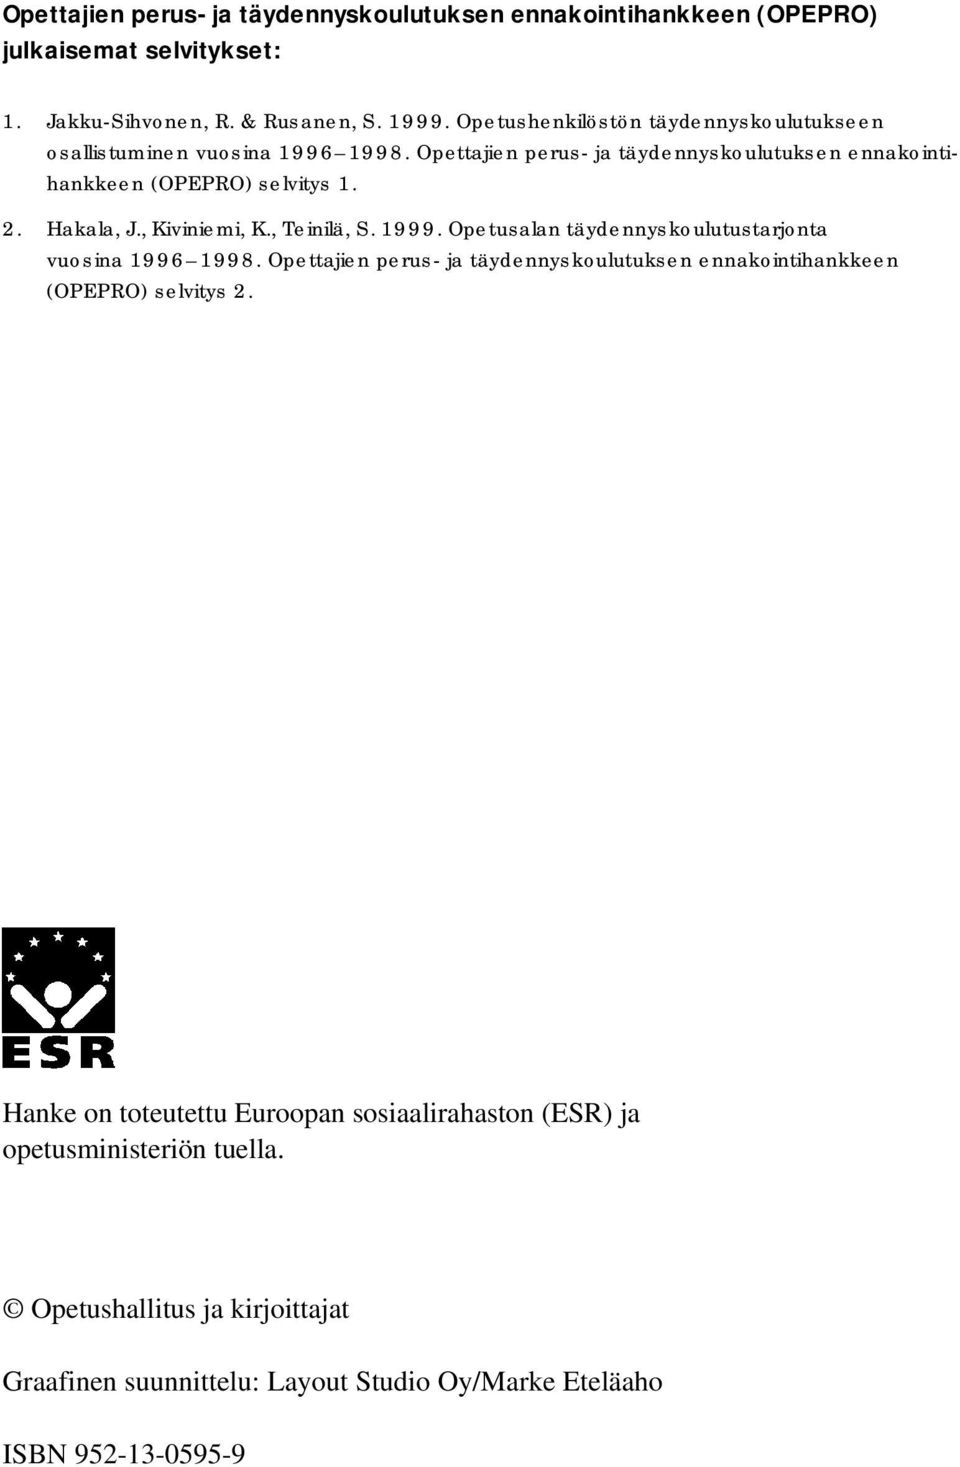 Hakala, J., Kiviniemi, K., Teinilä, S. 1999. Opetusalan täydennyskoulutustarjonta vuosina 1996 1998.